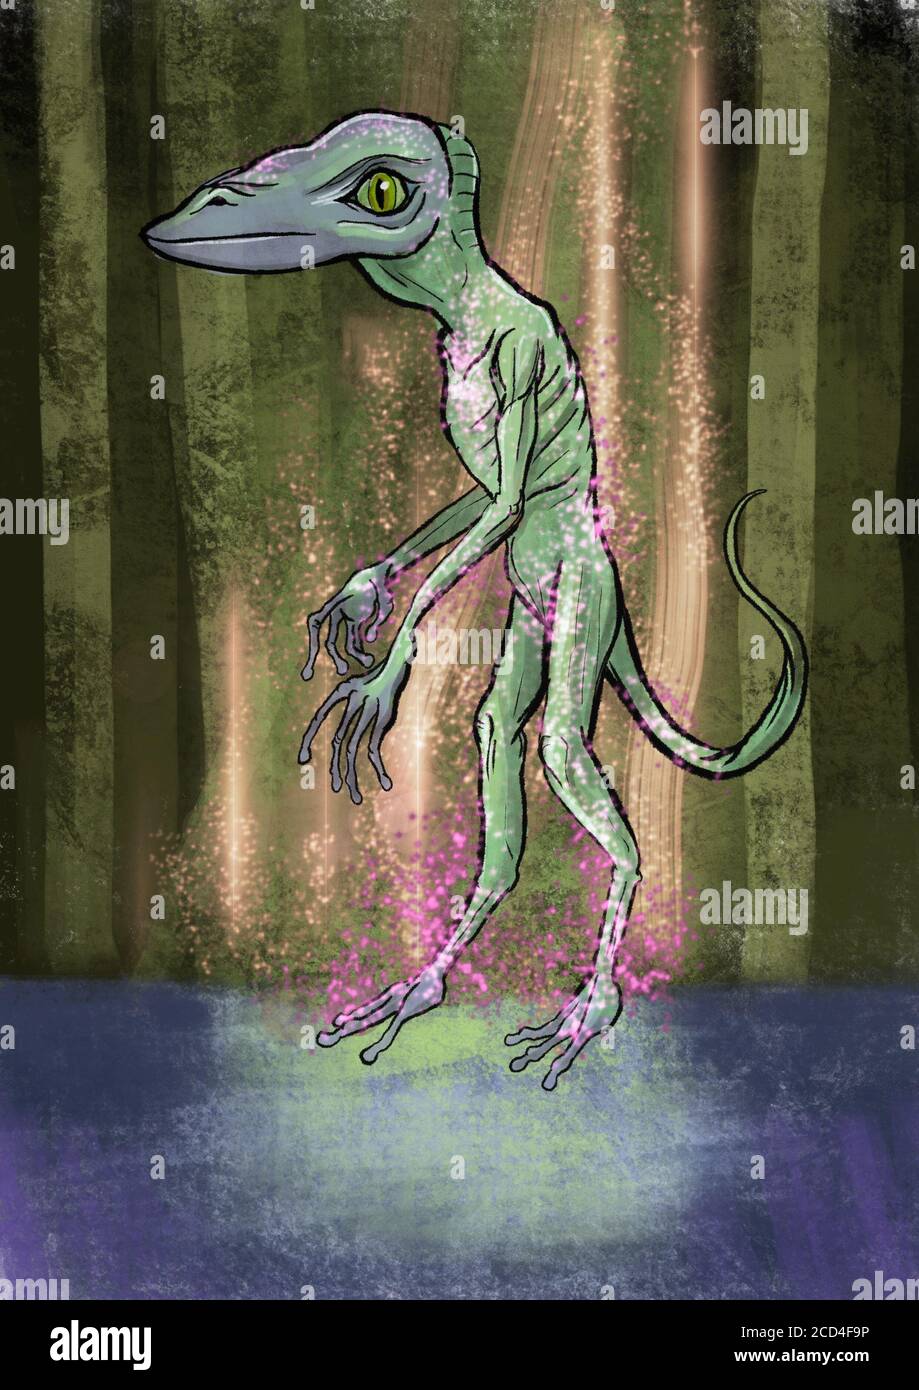 Illustration eines Reptilien-Aliens Stockfoto